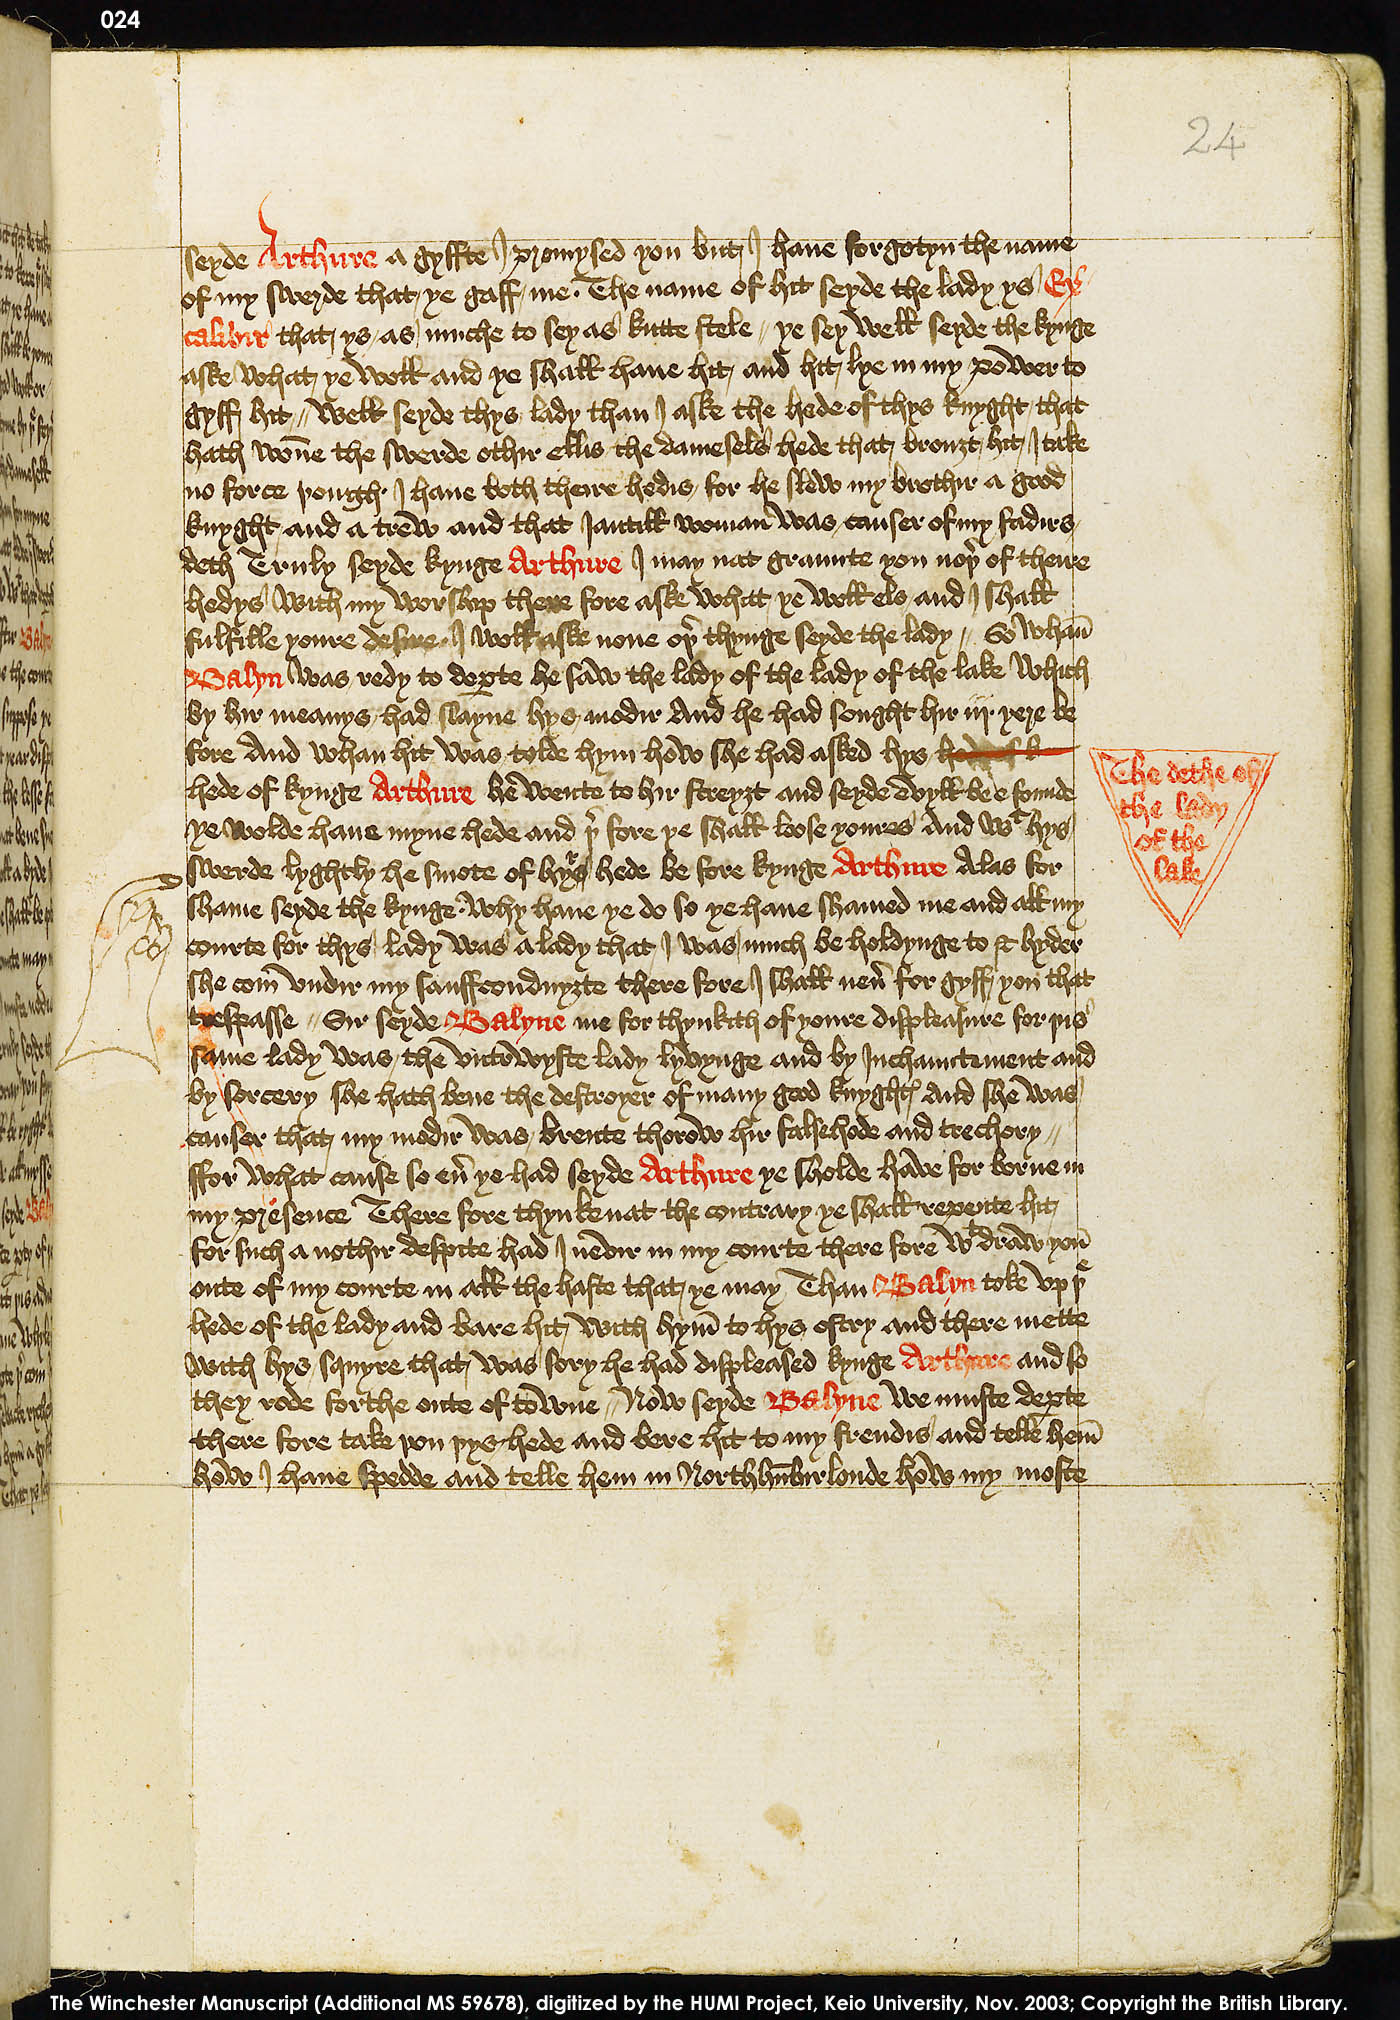 Folio 24r